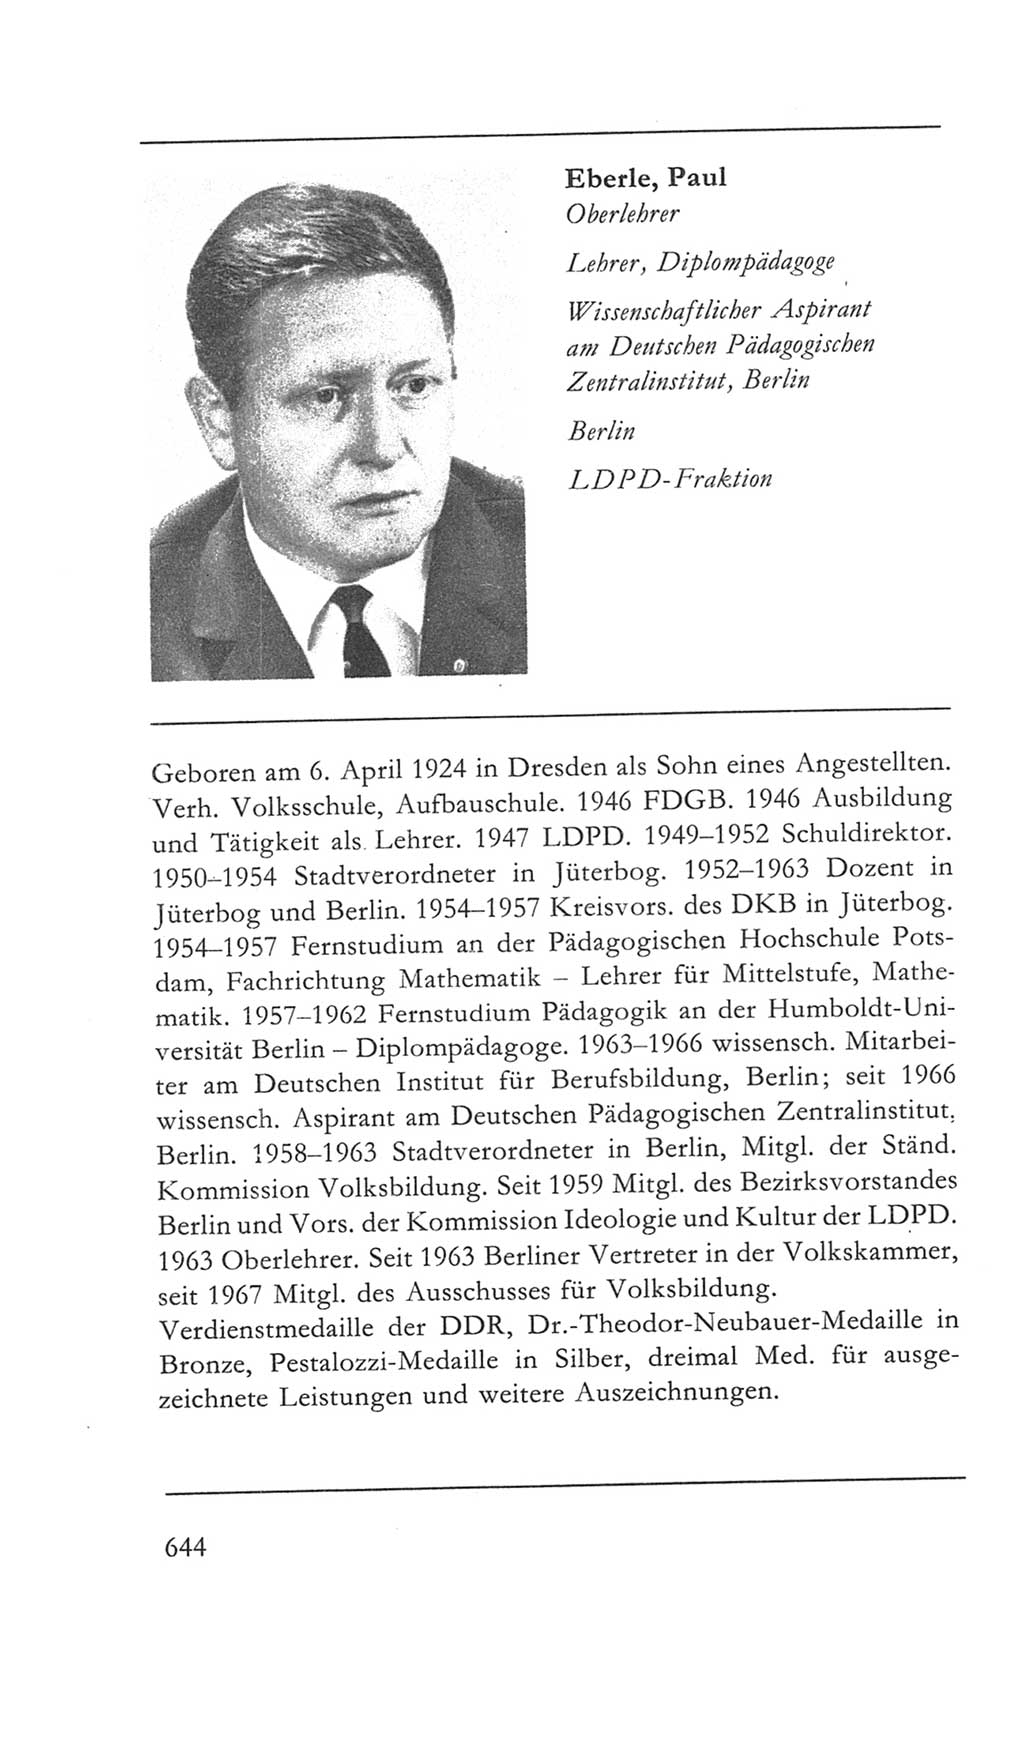 Volkskammer (VK) der Deutschen Demokratischen Republik (DDR) 5. Wahlperiode 1967-1971, Seite 644 (VK. DDR 5. WP. 1967-1971, S. 644)